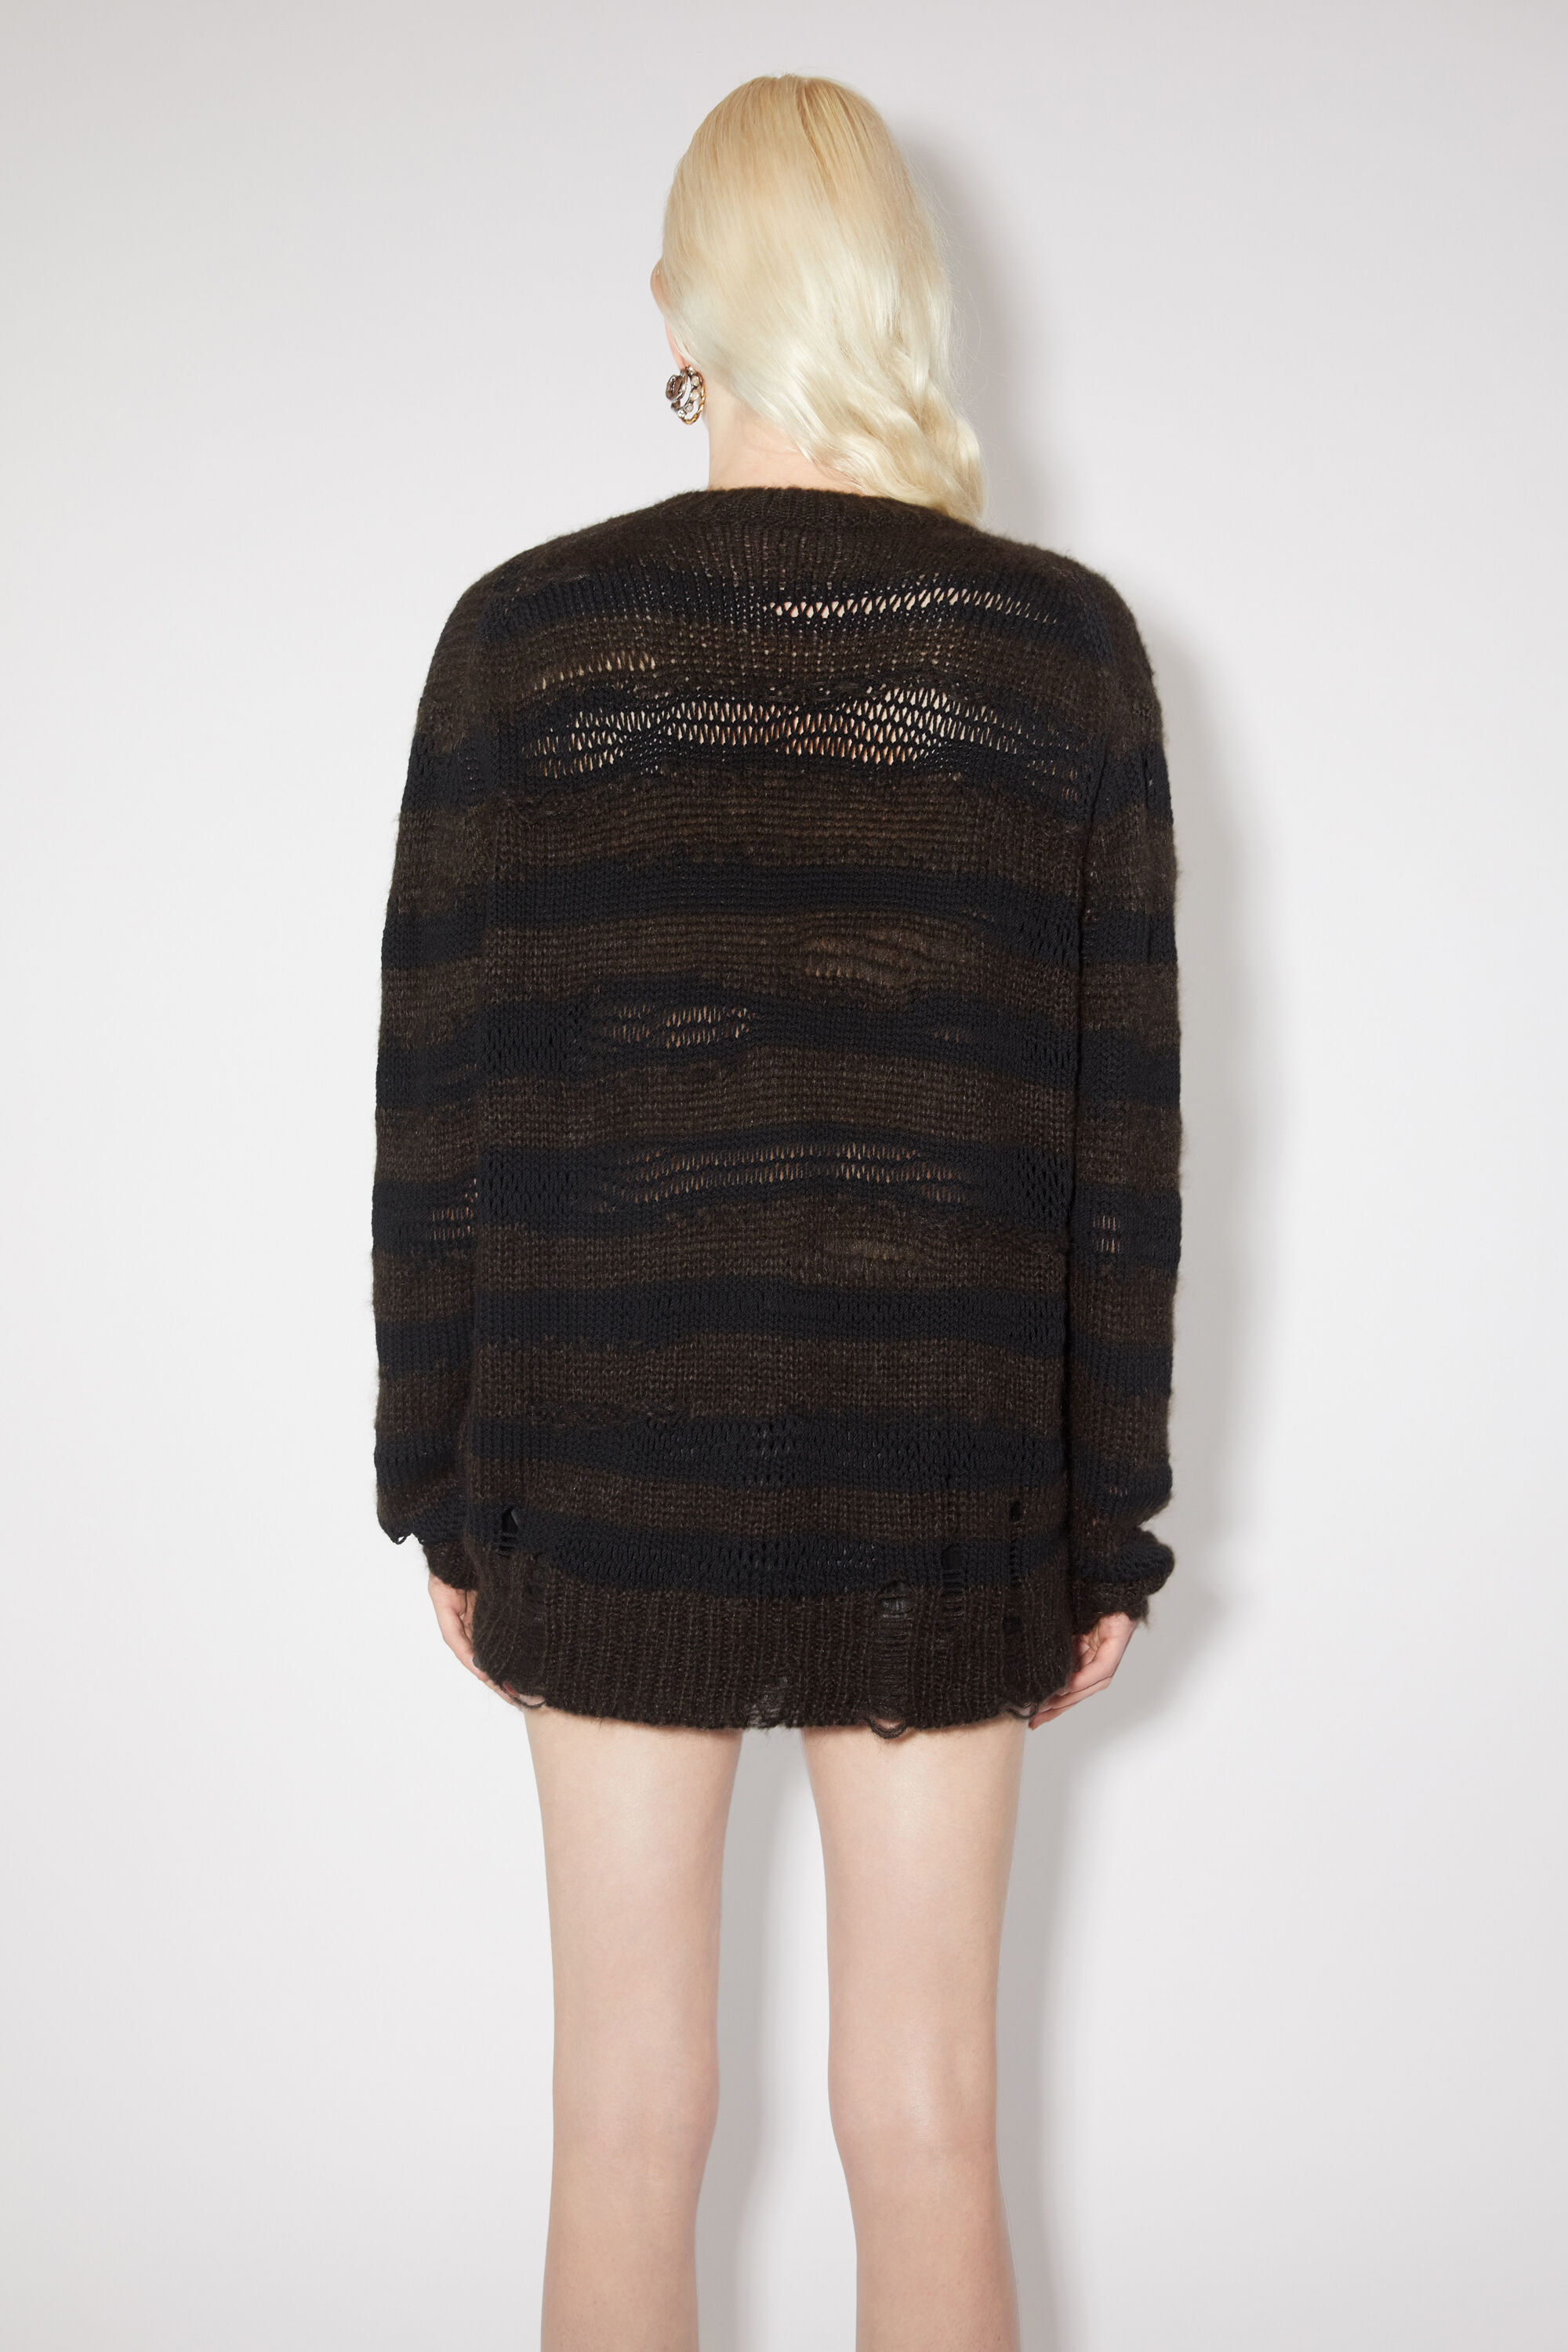 아크네 스튜디오 Acne Studios Distressed stripe jumper - Warm Charcoal Grey/Black,Warm Charcoal grey/black